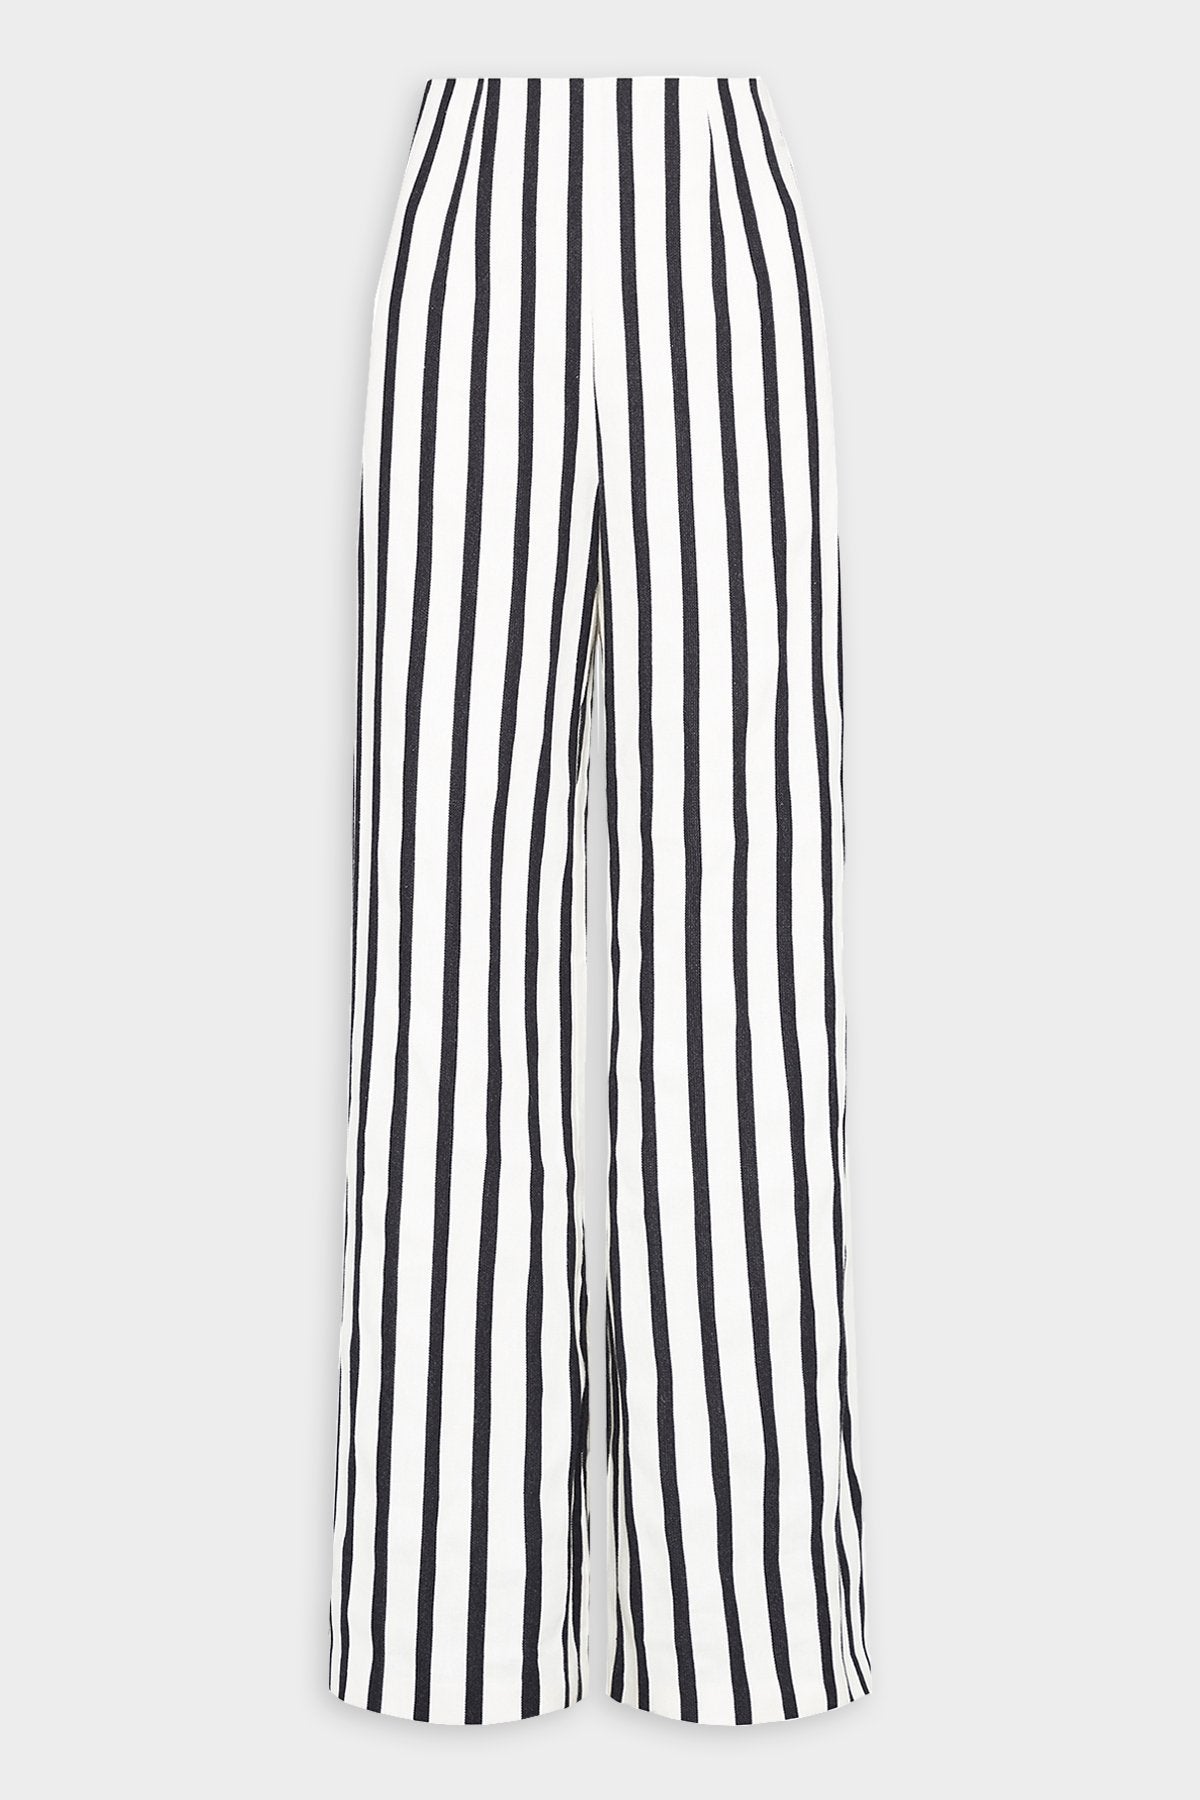 Amo Trousers in Black & White Stripe - shop-olivia.com